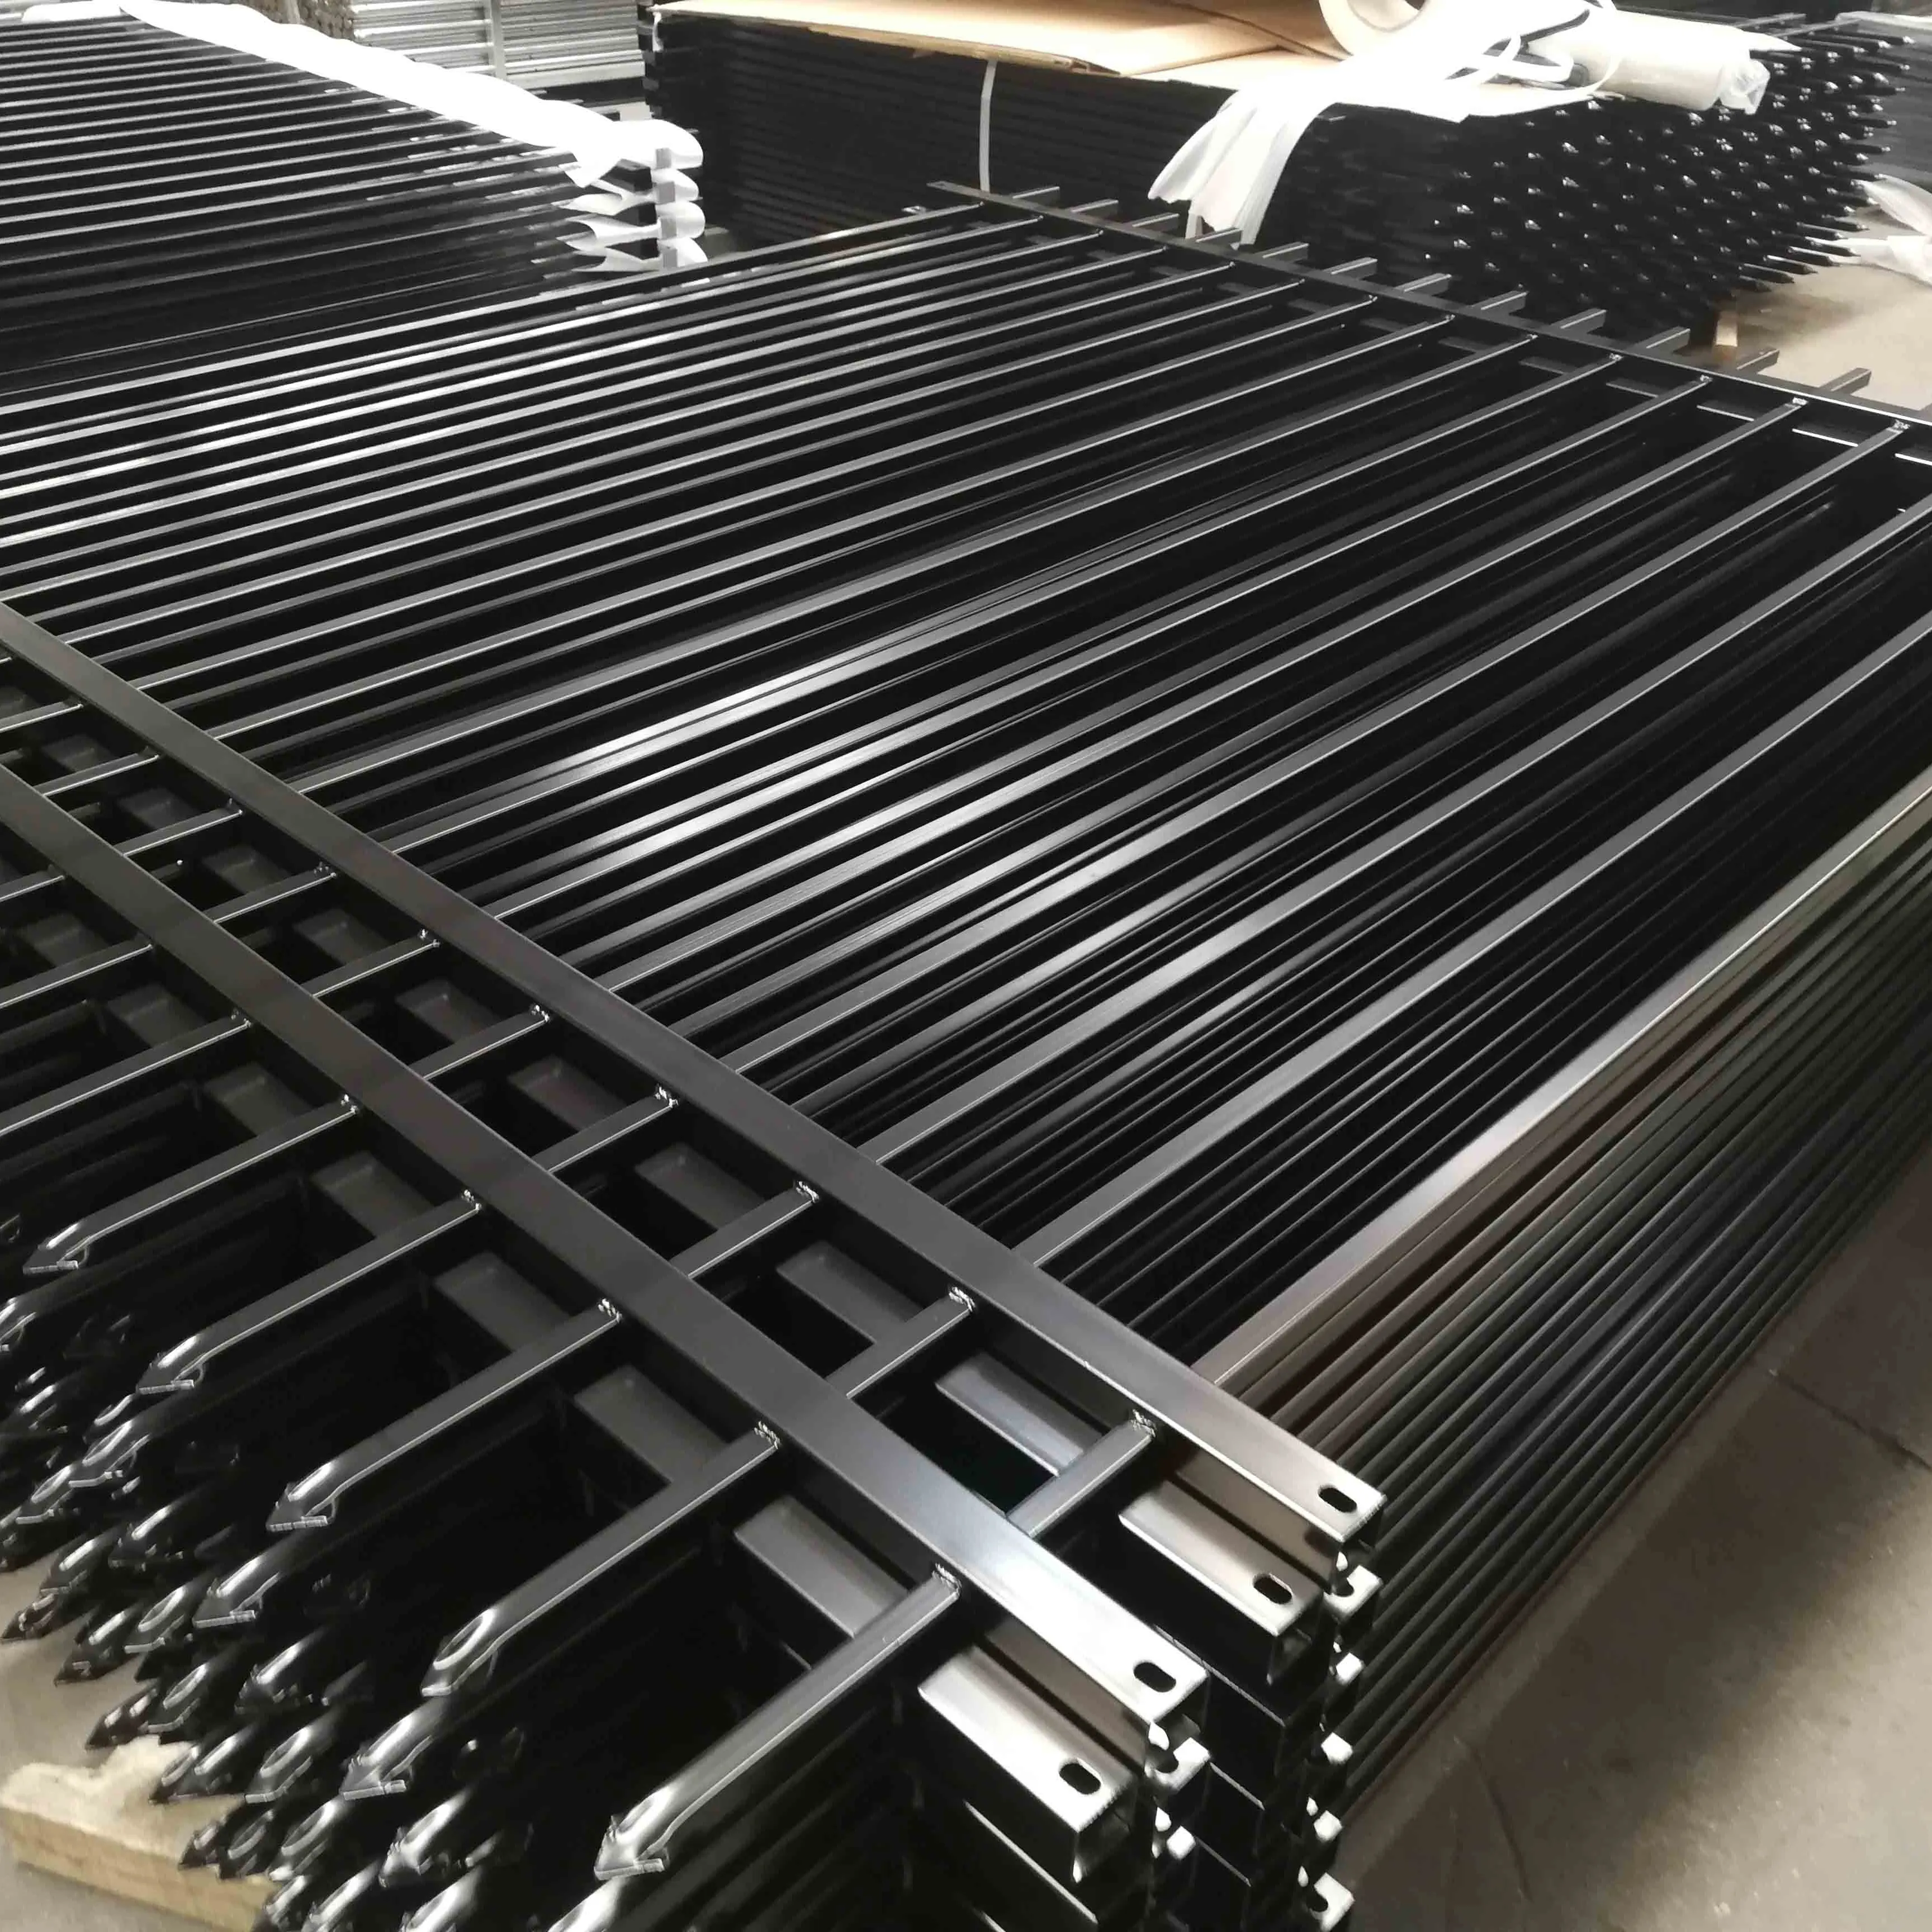 Billige Eisenzaun Philippinen geschmiedet vorgefertigte langlebige Pulver beschichtung Stahlrohr Zaun in Stücken